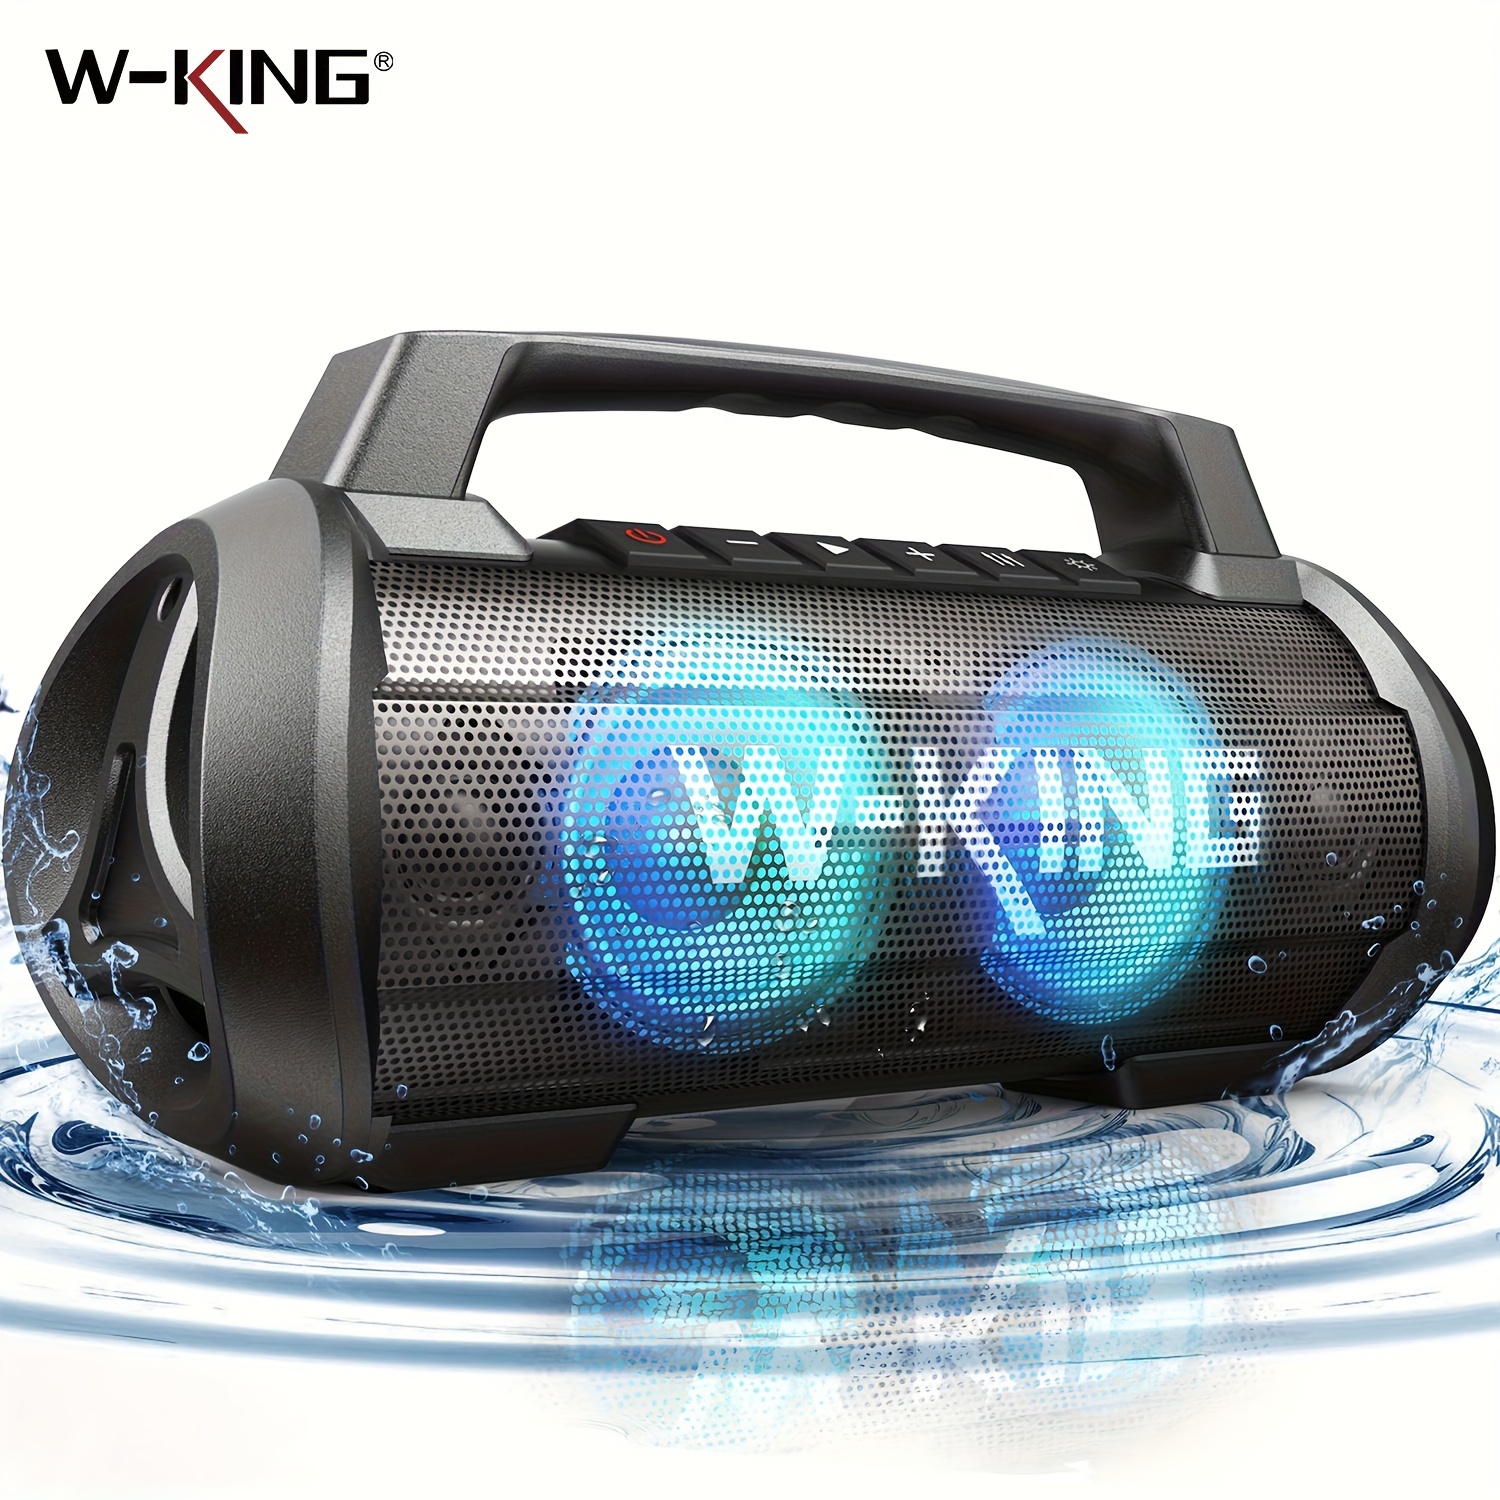 

70w Wireless Speaker, Portable Speakers Loud Party Large Outdoor Waterproof Speaker/bass Boost/dsp/stereo Pairing/powerbank/mic In